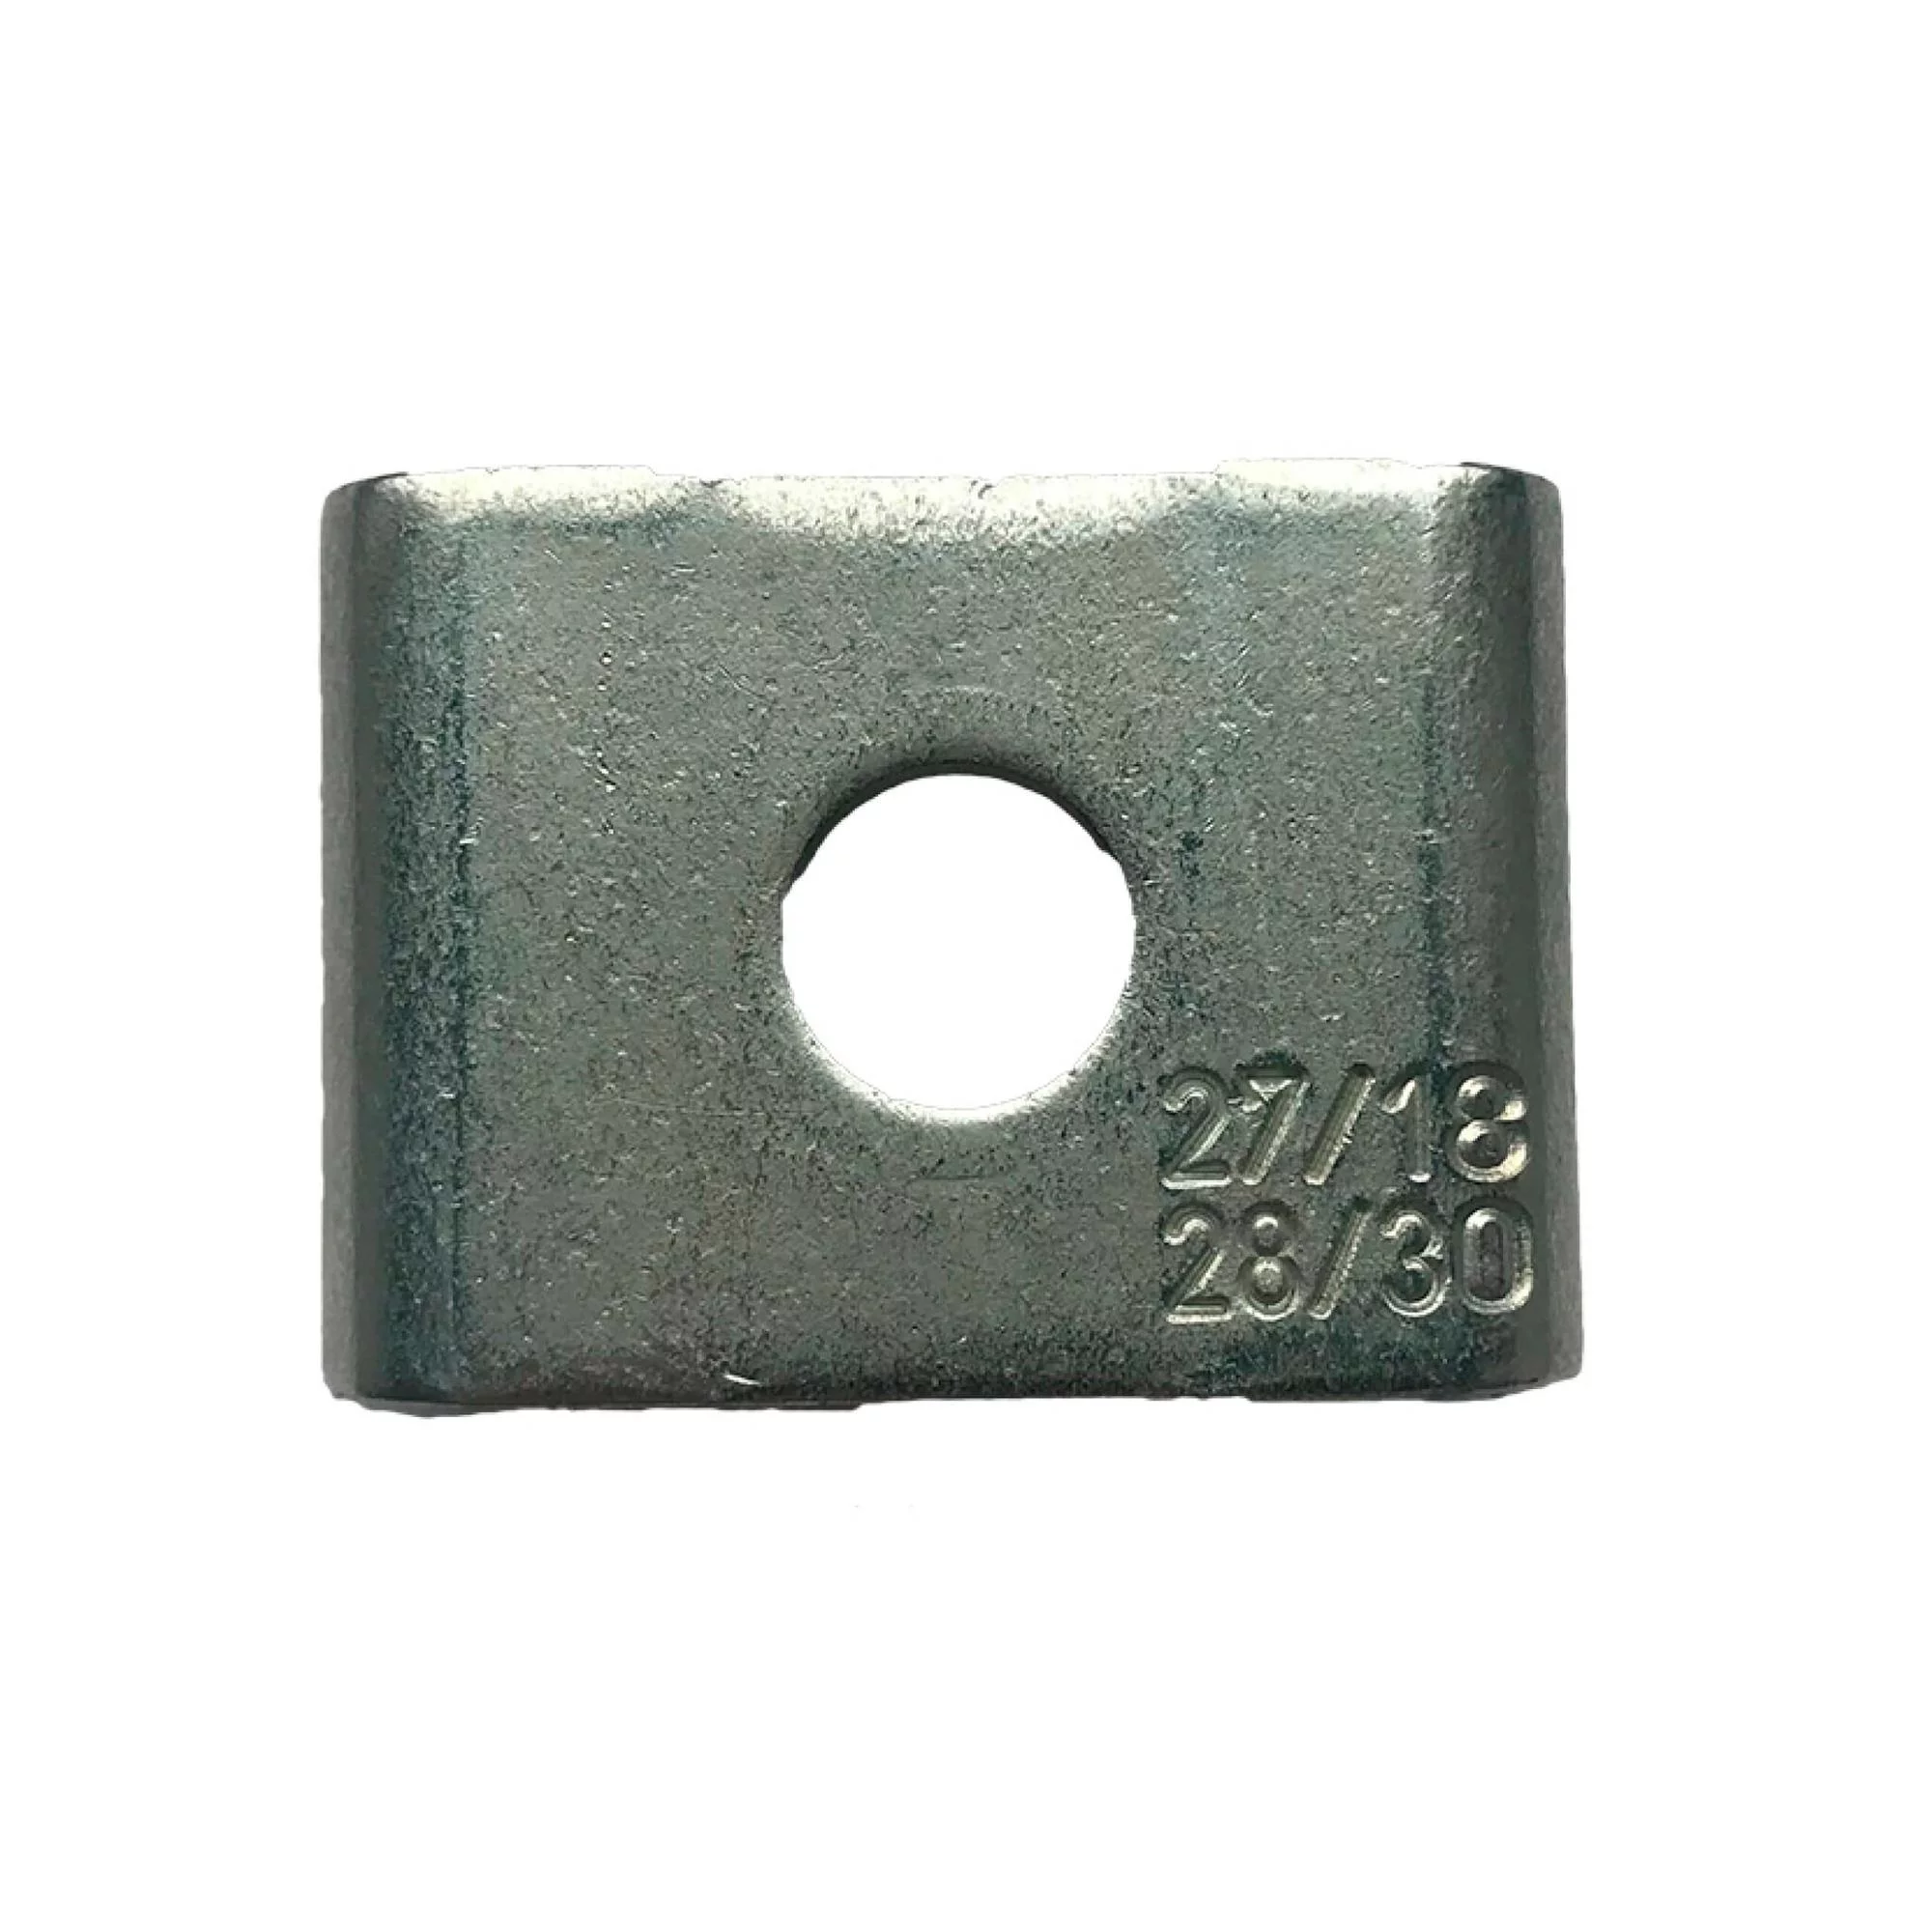 borgclip-voor-montagerail-zilver-27-18-/-28-30.-100-stuks